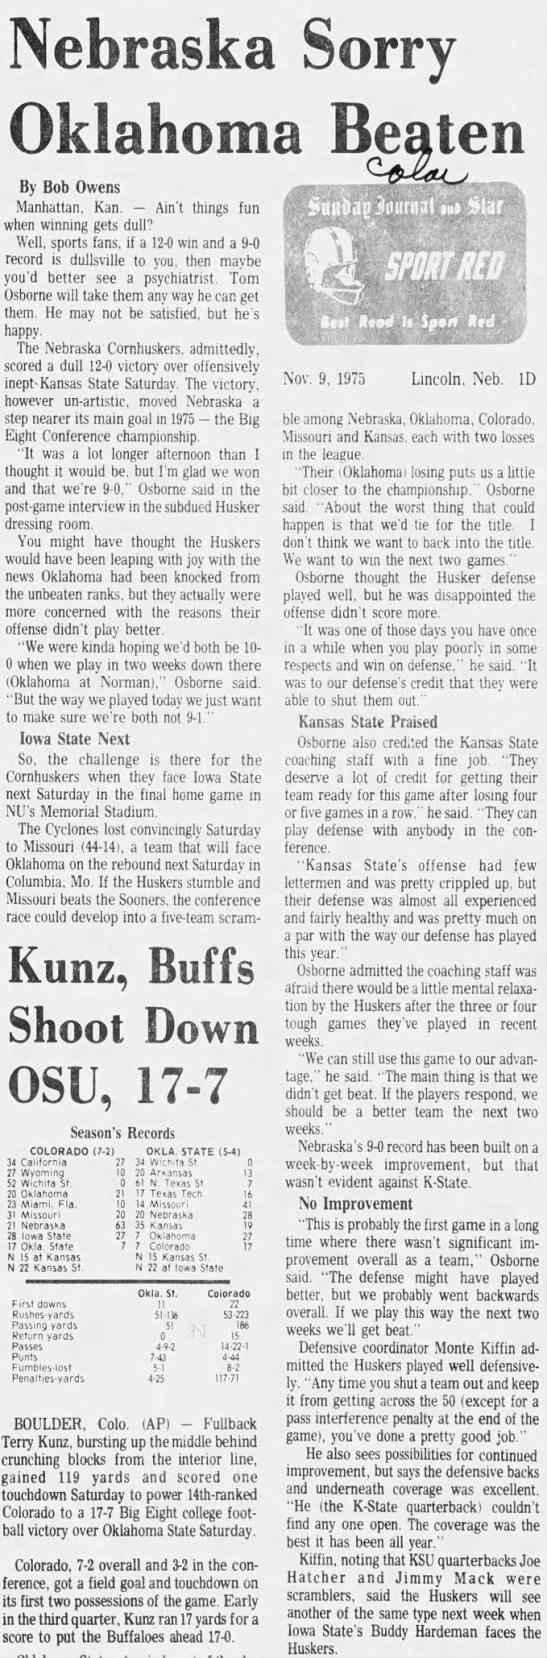 1975 Nebraska-Kansas State LJS Okla. loss - 